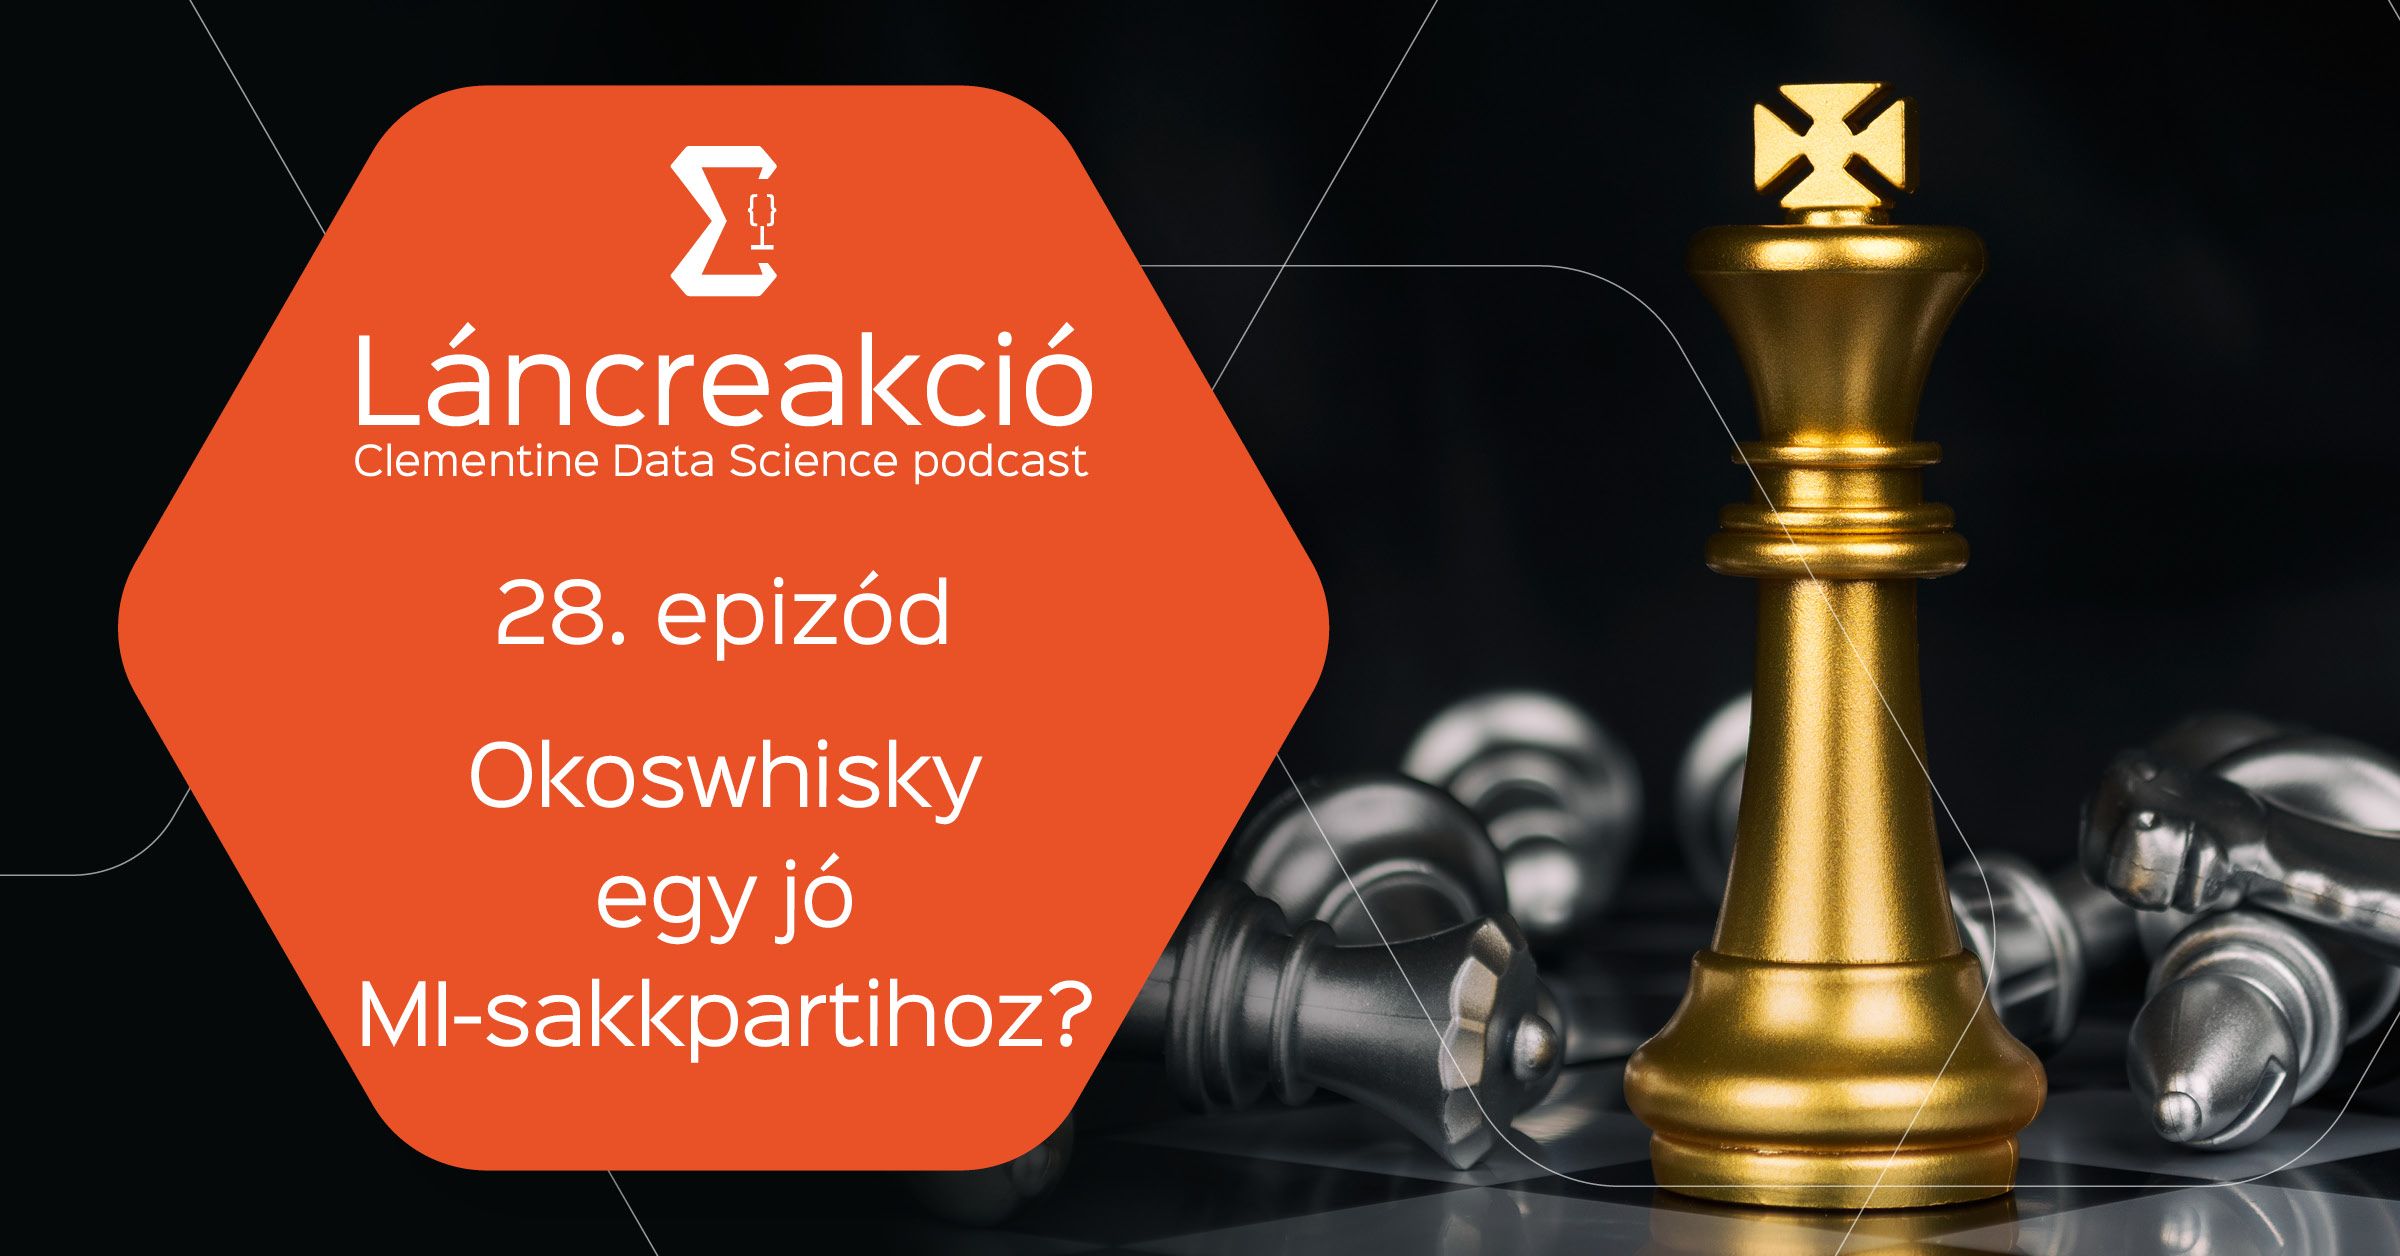 Okoswhisky egy jó MI-sakkpartihoz?